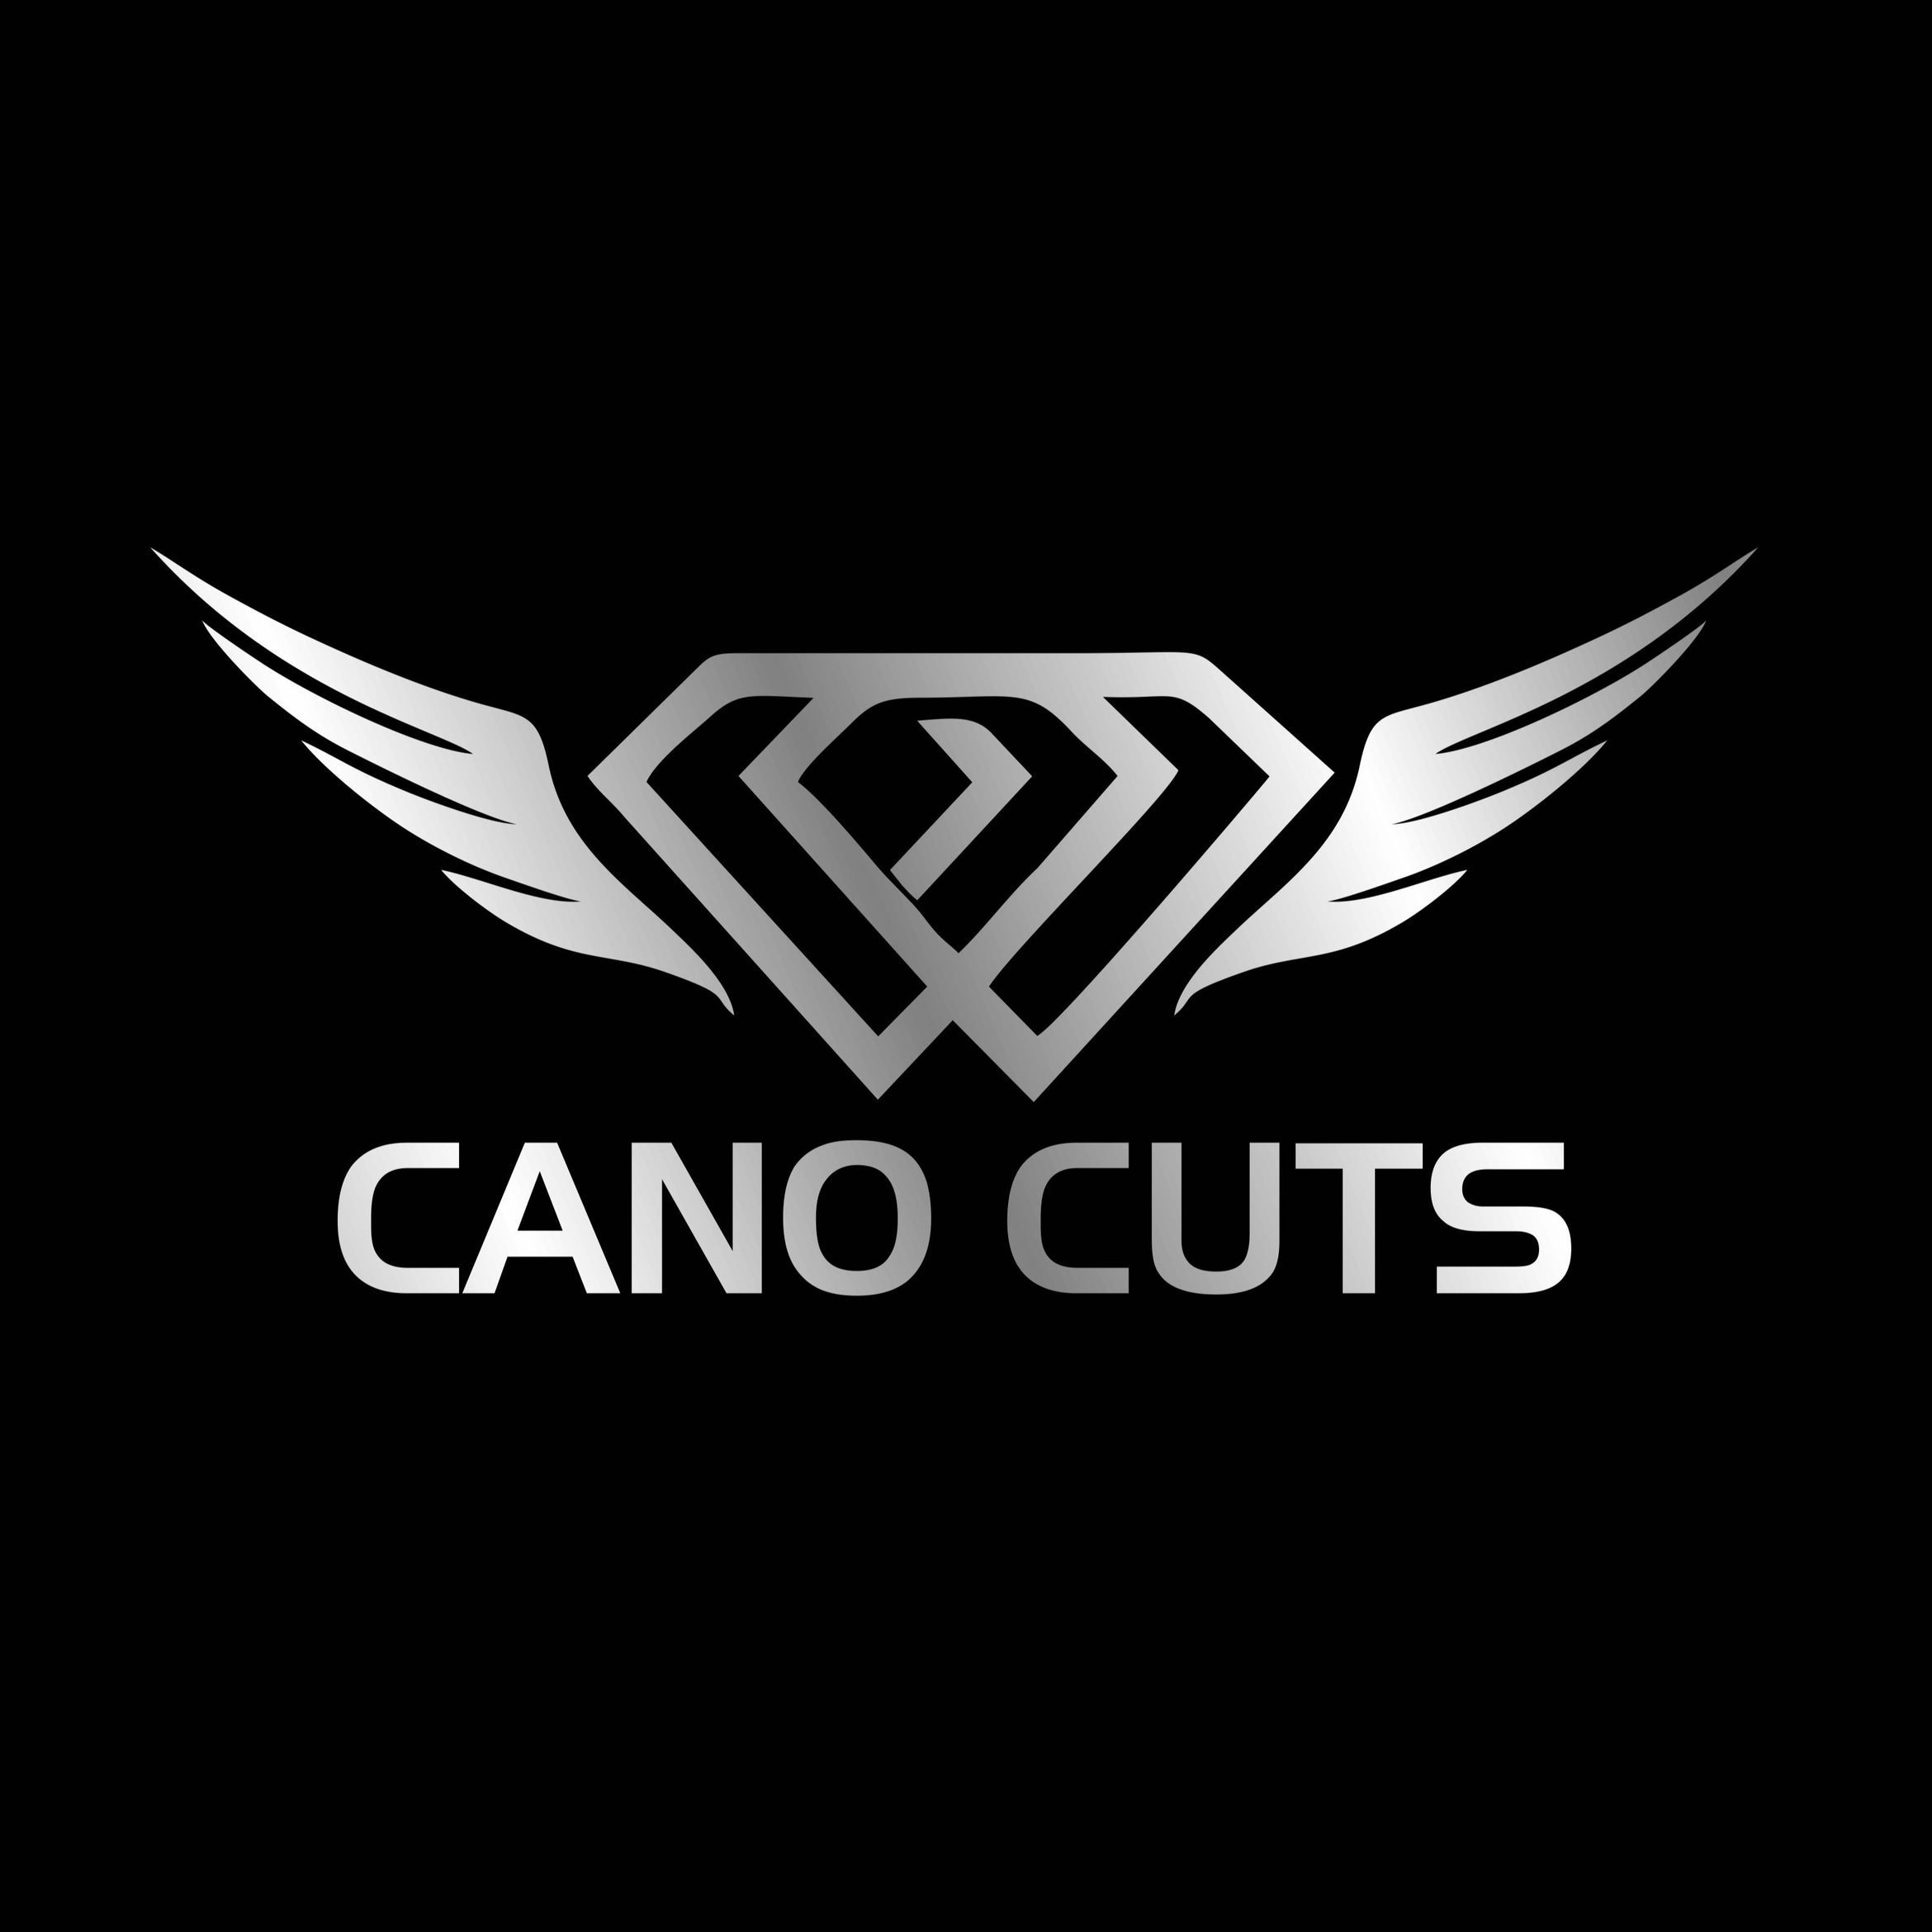 Cano Cuts, 330 E Lohman Ave, Las Cruces, 88001